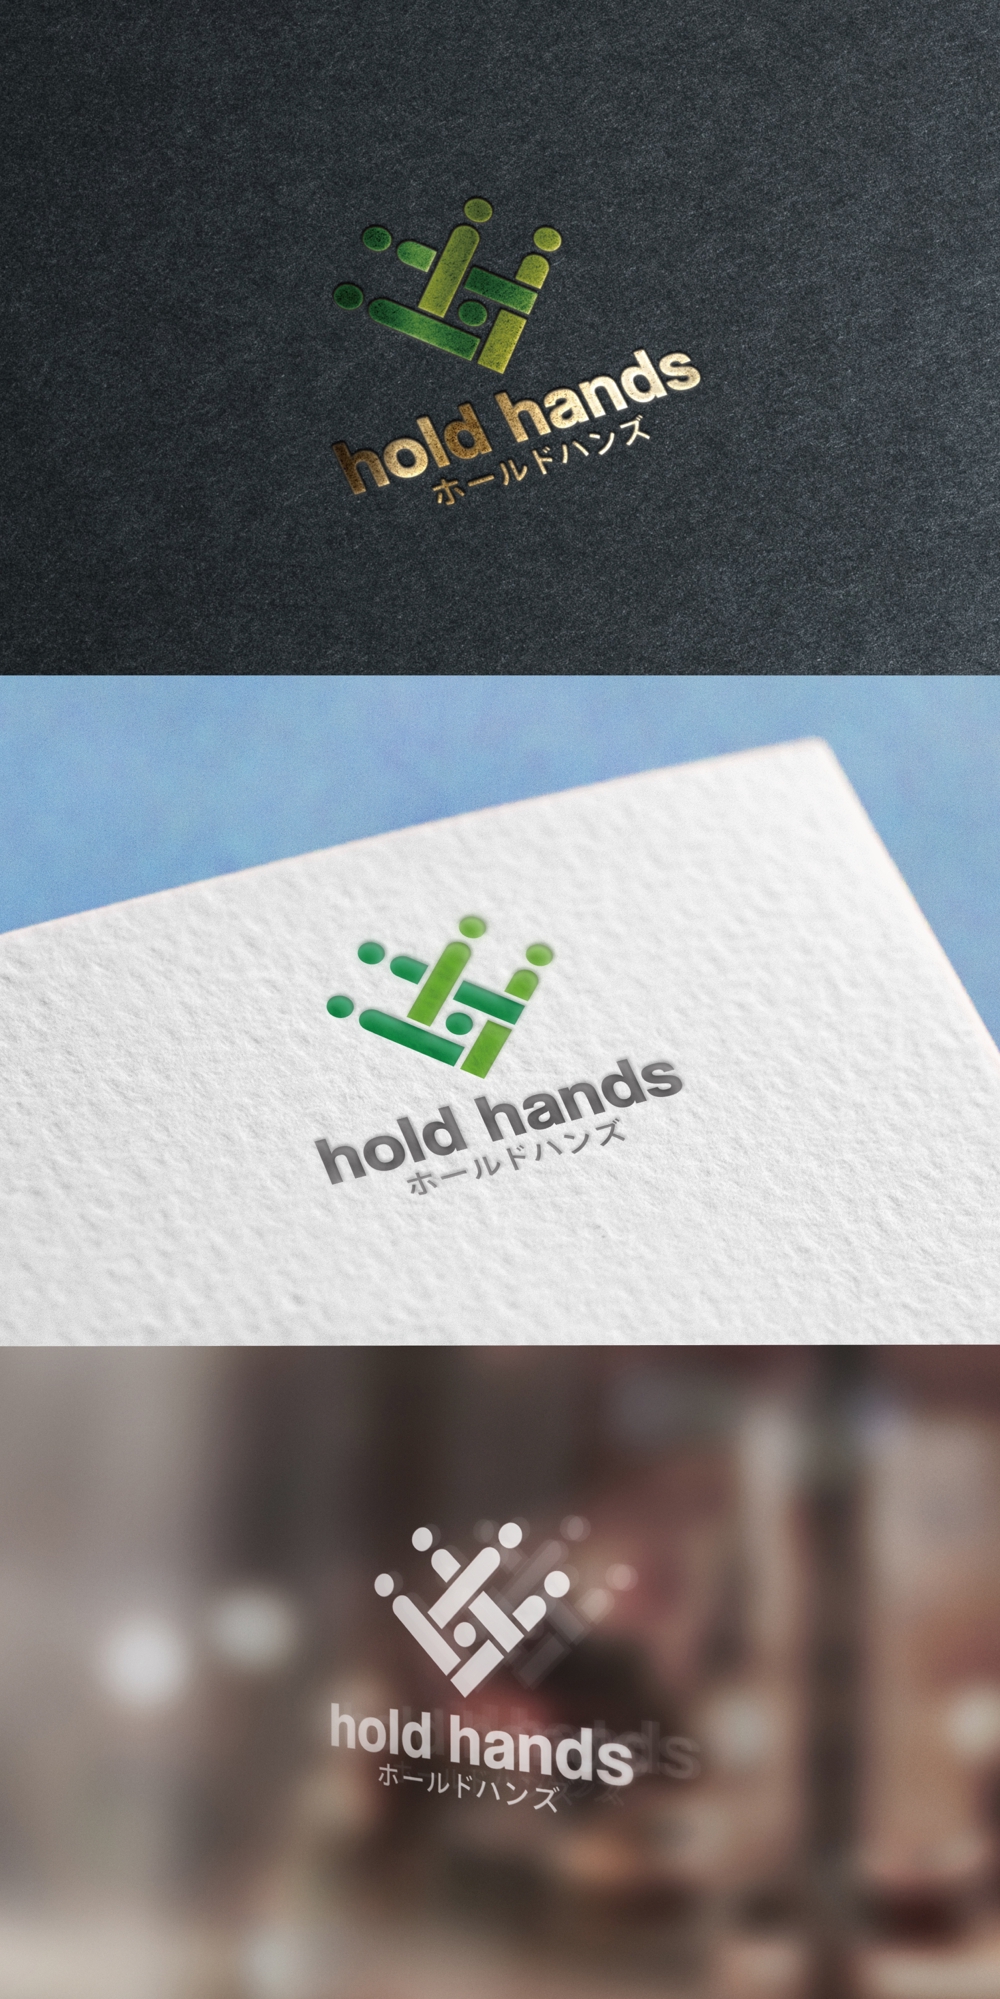 hold hands_logo01_01.jpg